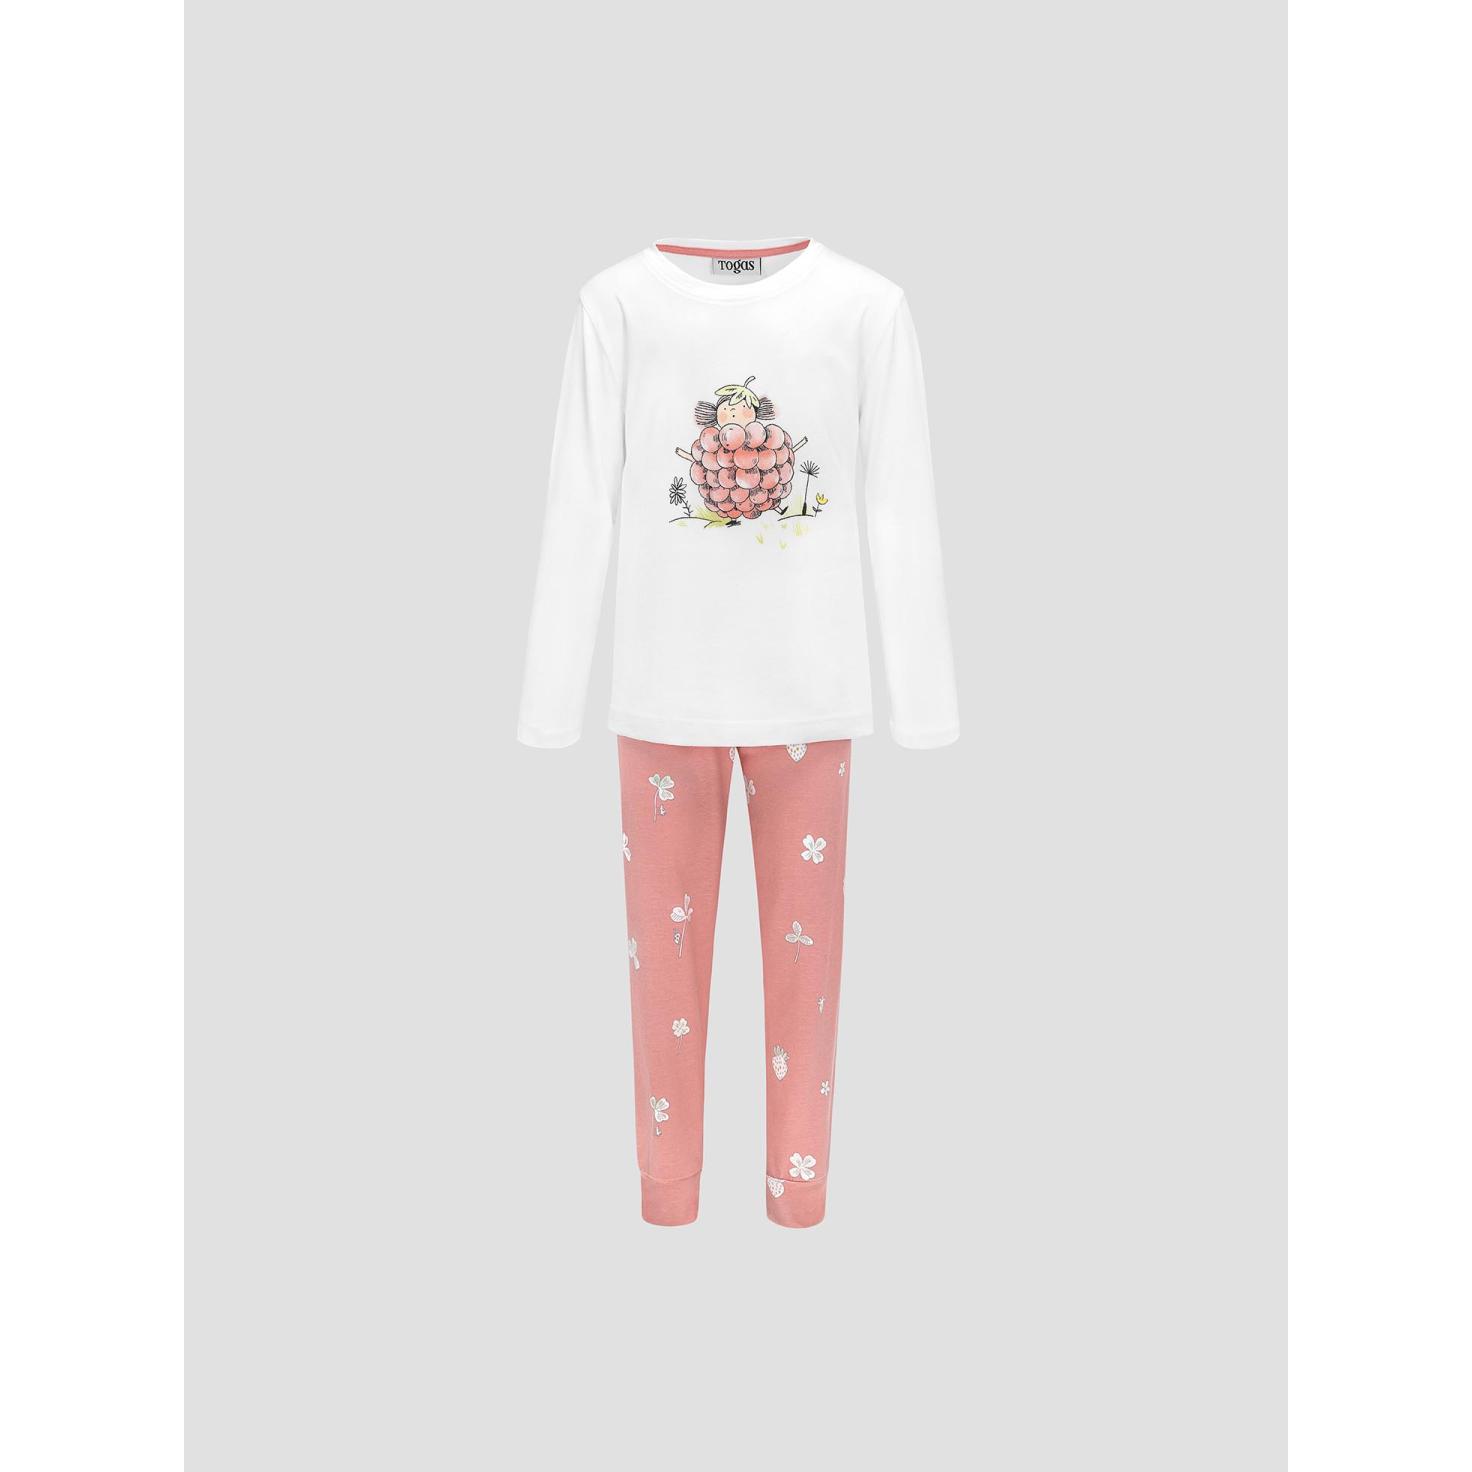 Пижама для девочек Kids by togas Стробби бело-розовый 140-146 см жен пижама с шортами инь янь белый р 48